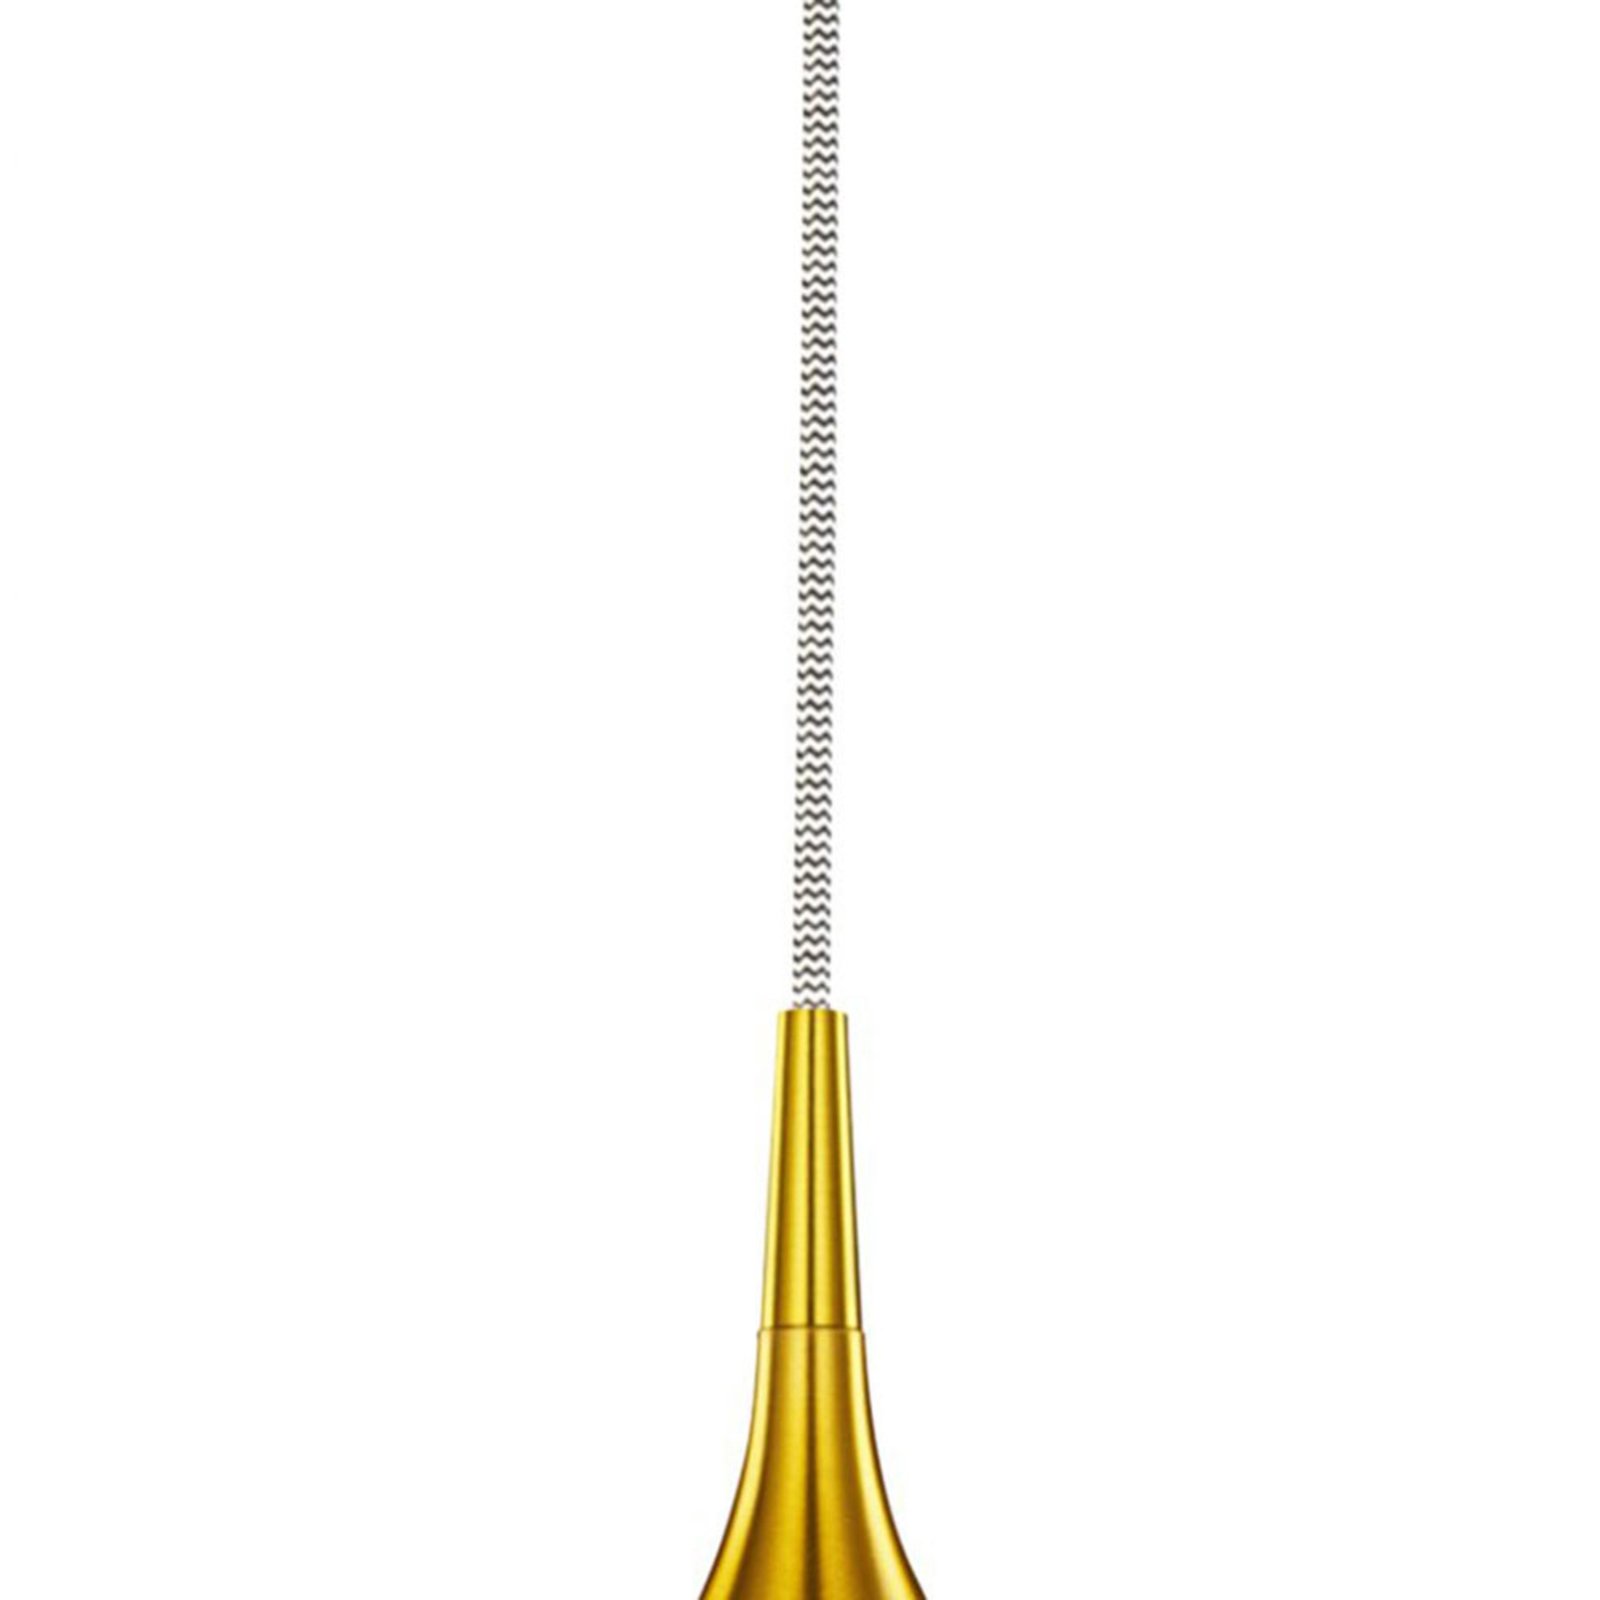 Lampă suspendată Vibrant Ø 12cm, auriu